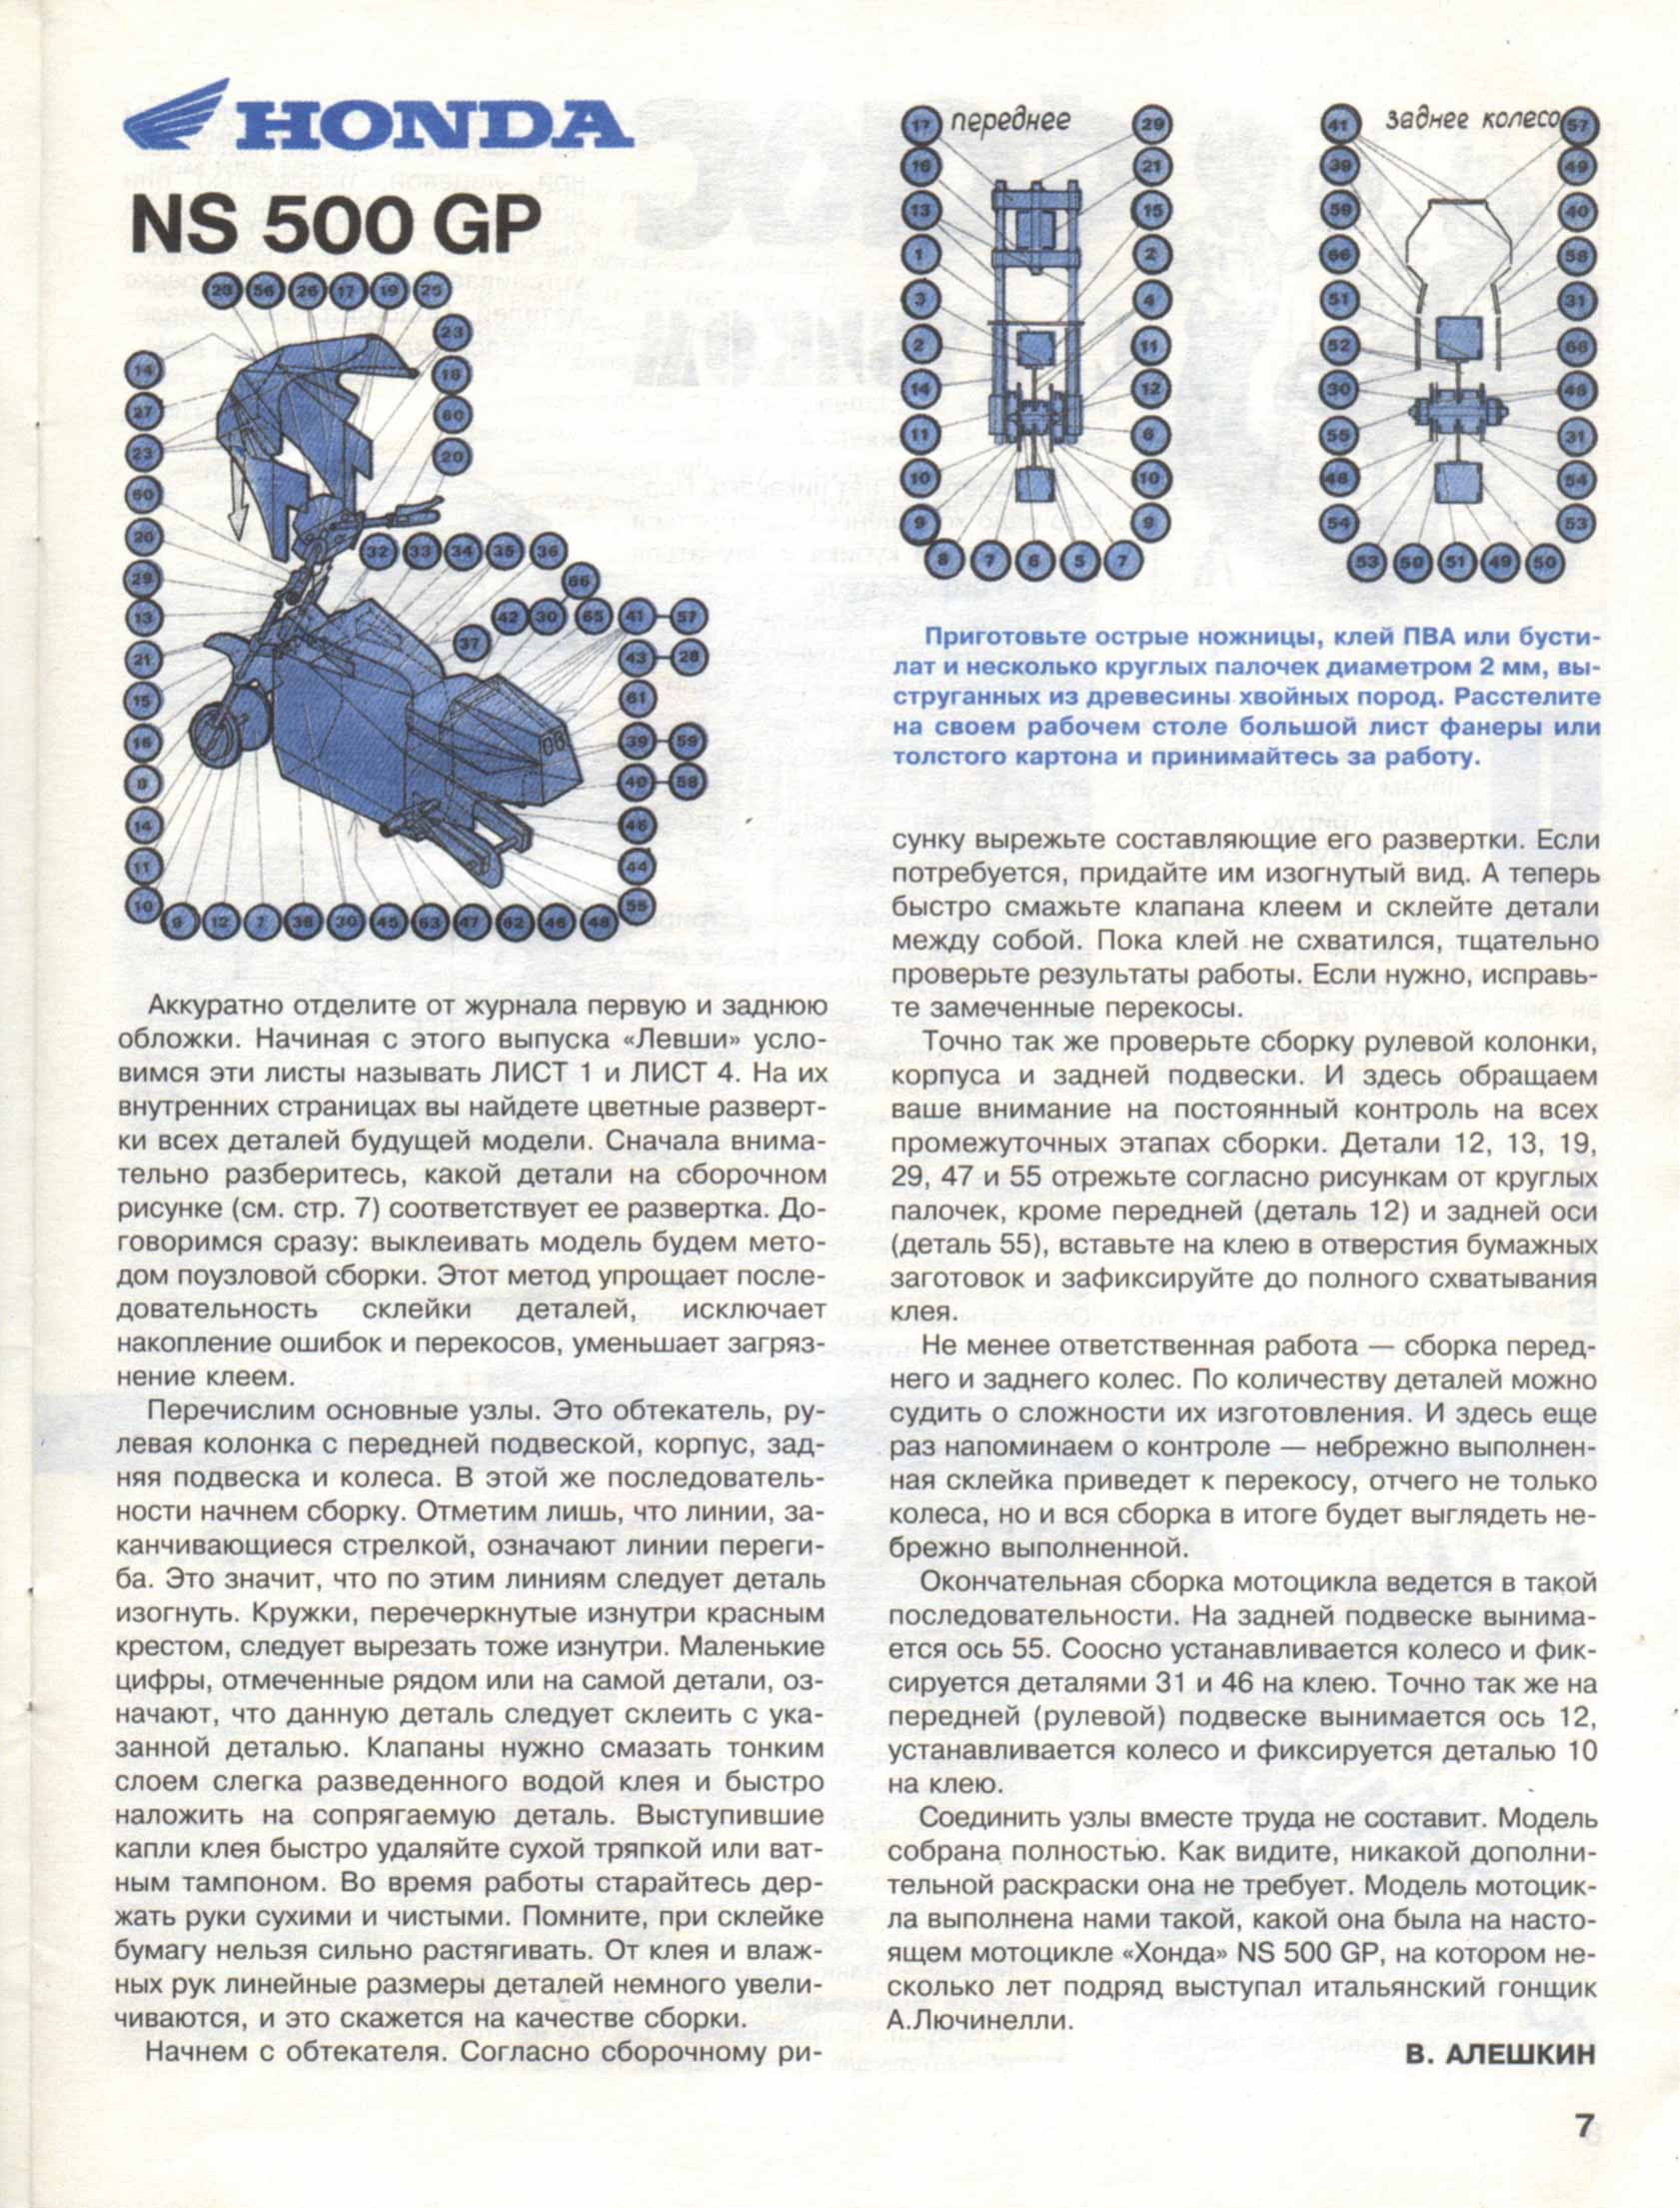 "Левша" 1, 1997, 7 c.